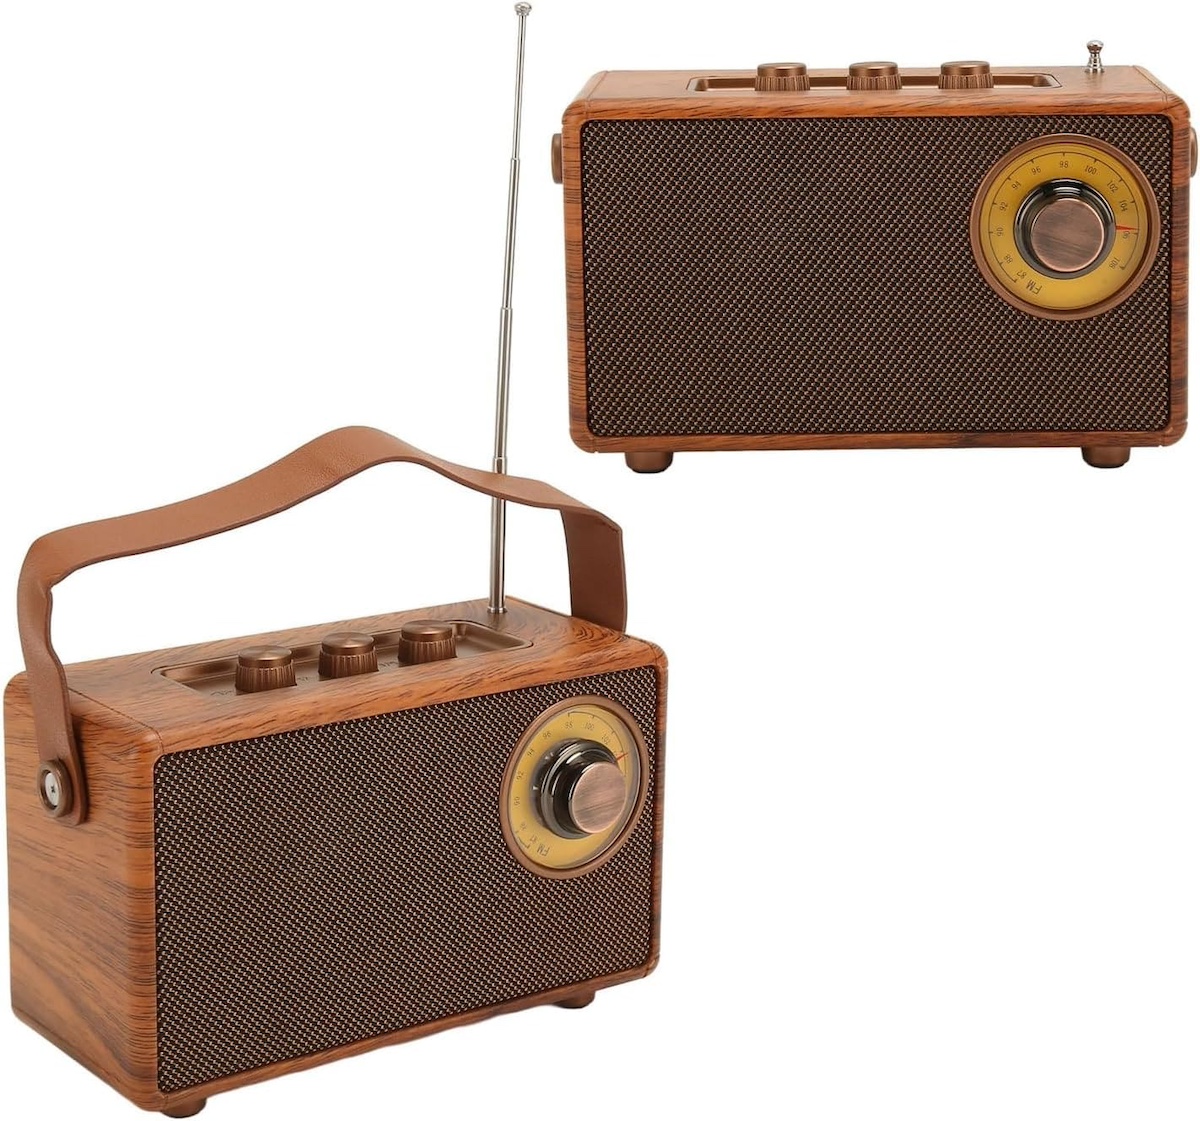 radio mini małe w stylu retro vintage w drewnie